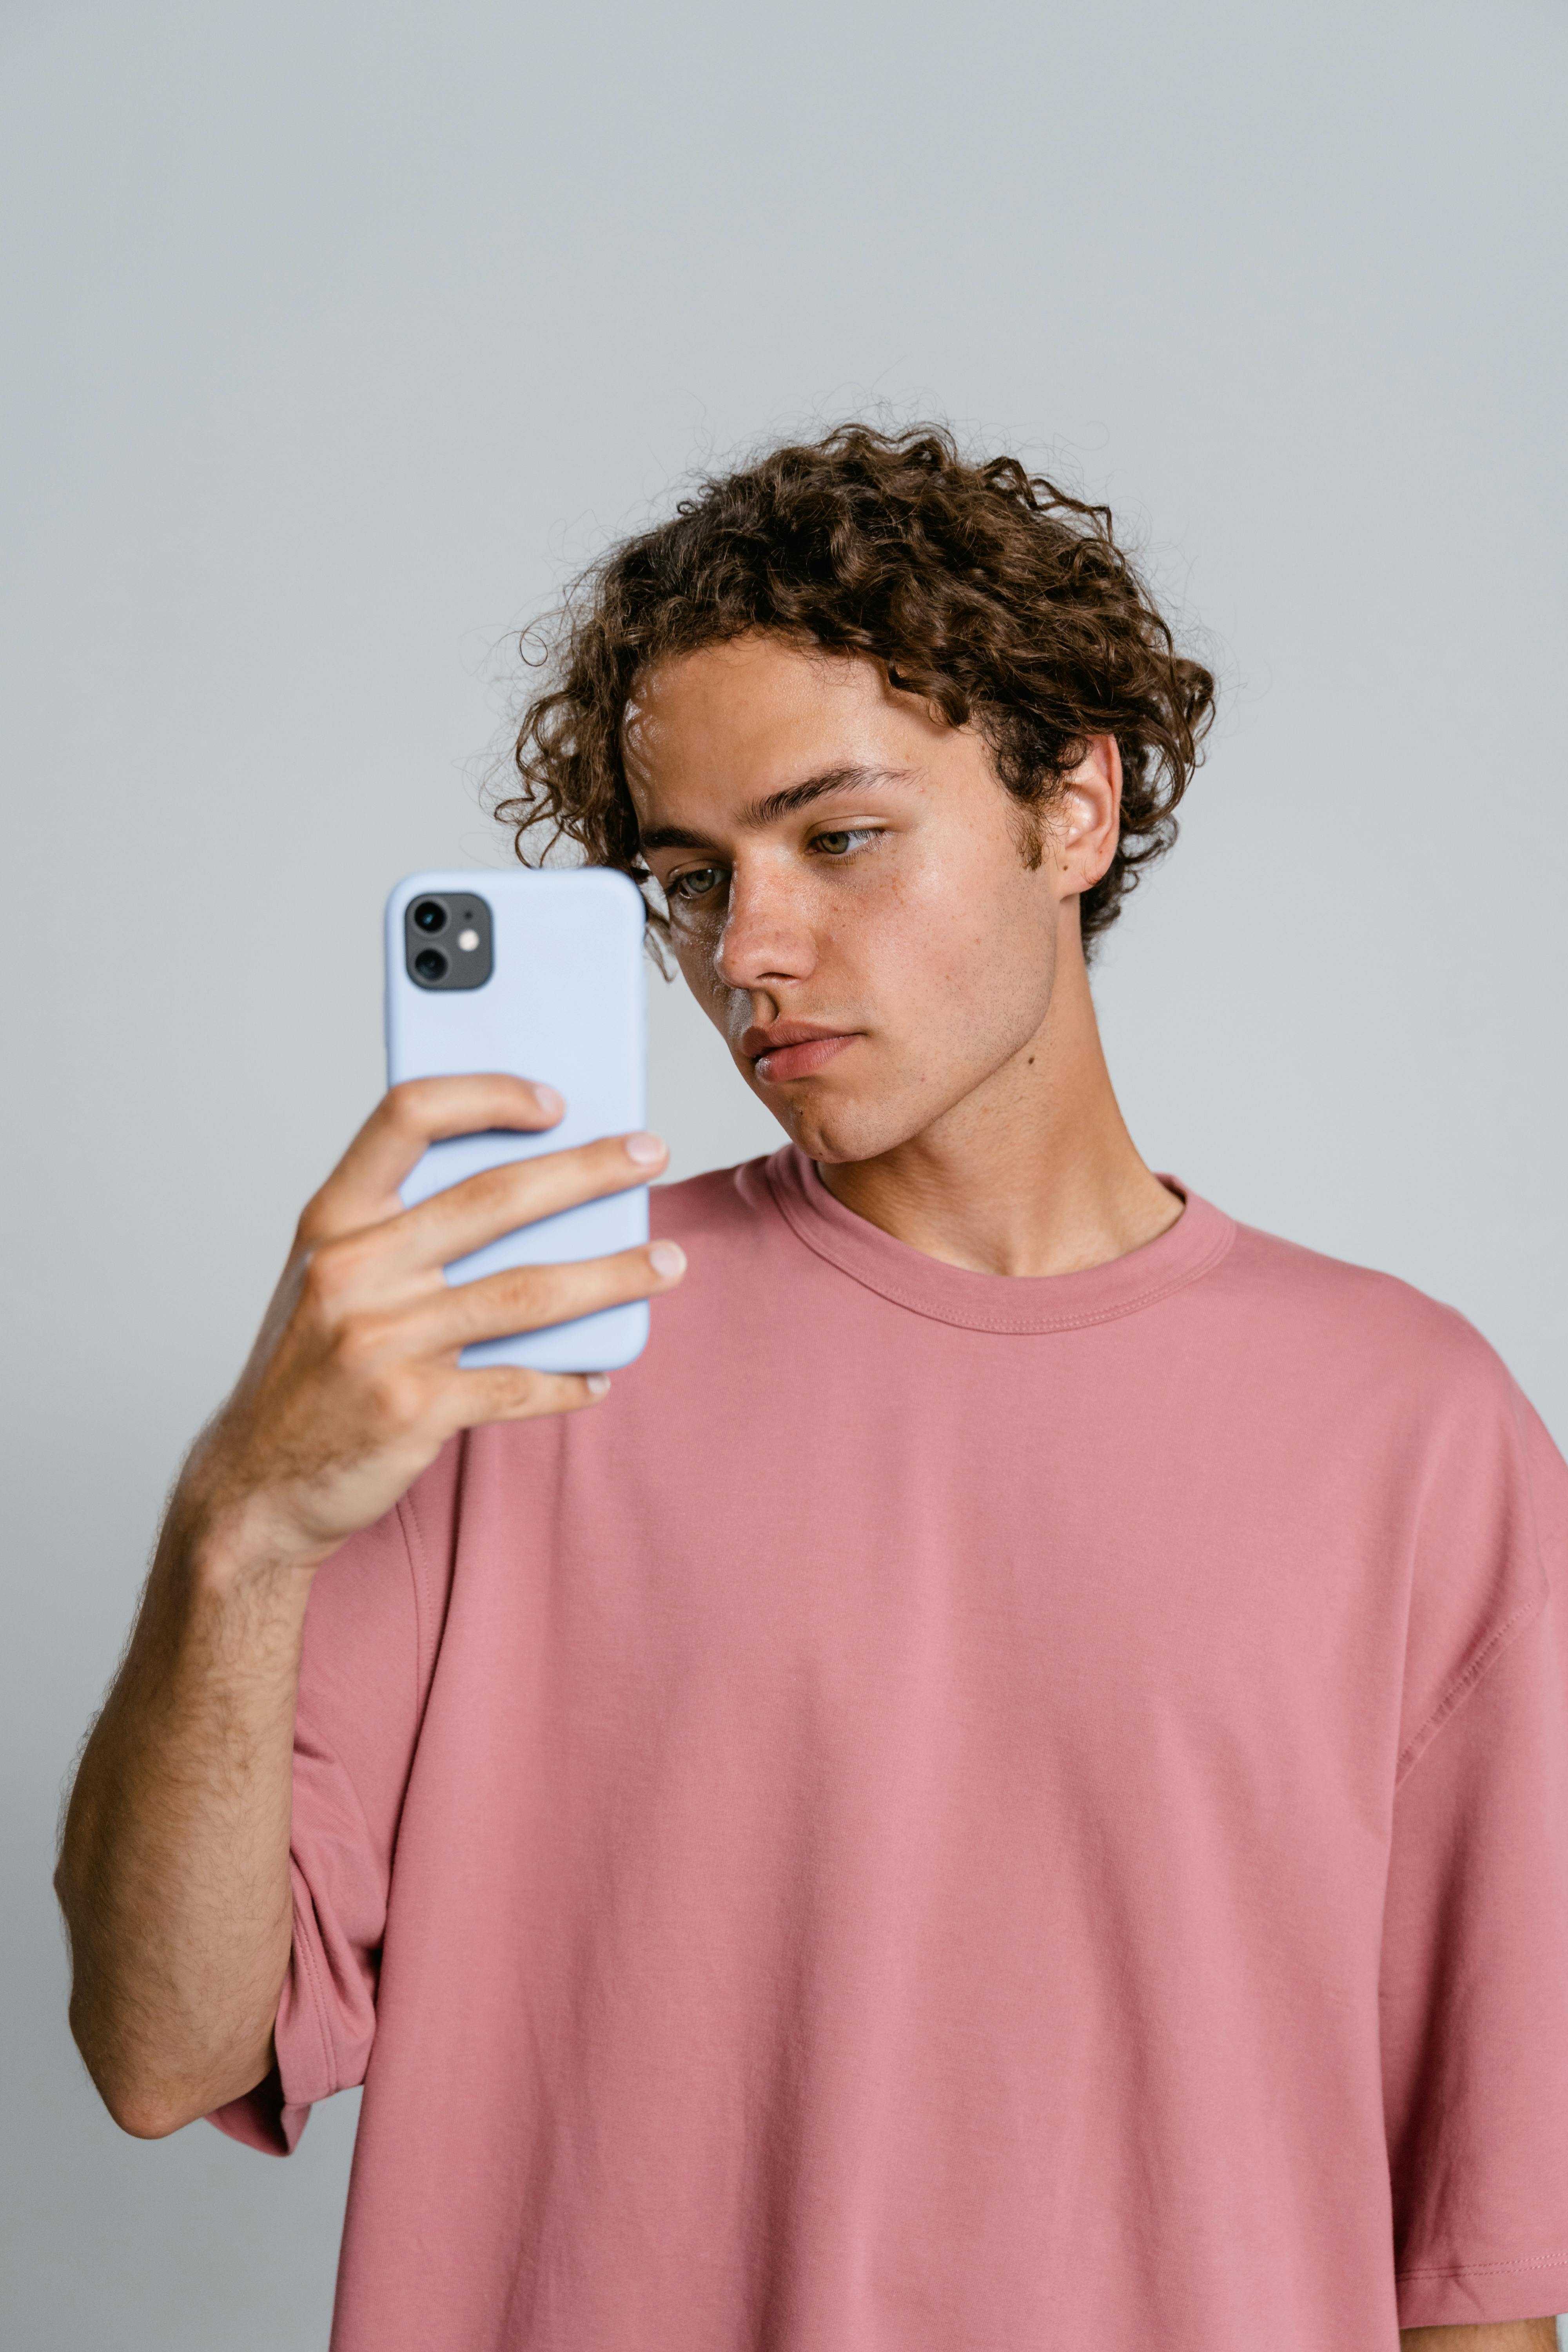 Un adolescent sur son téléphone | Source : Pexels